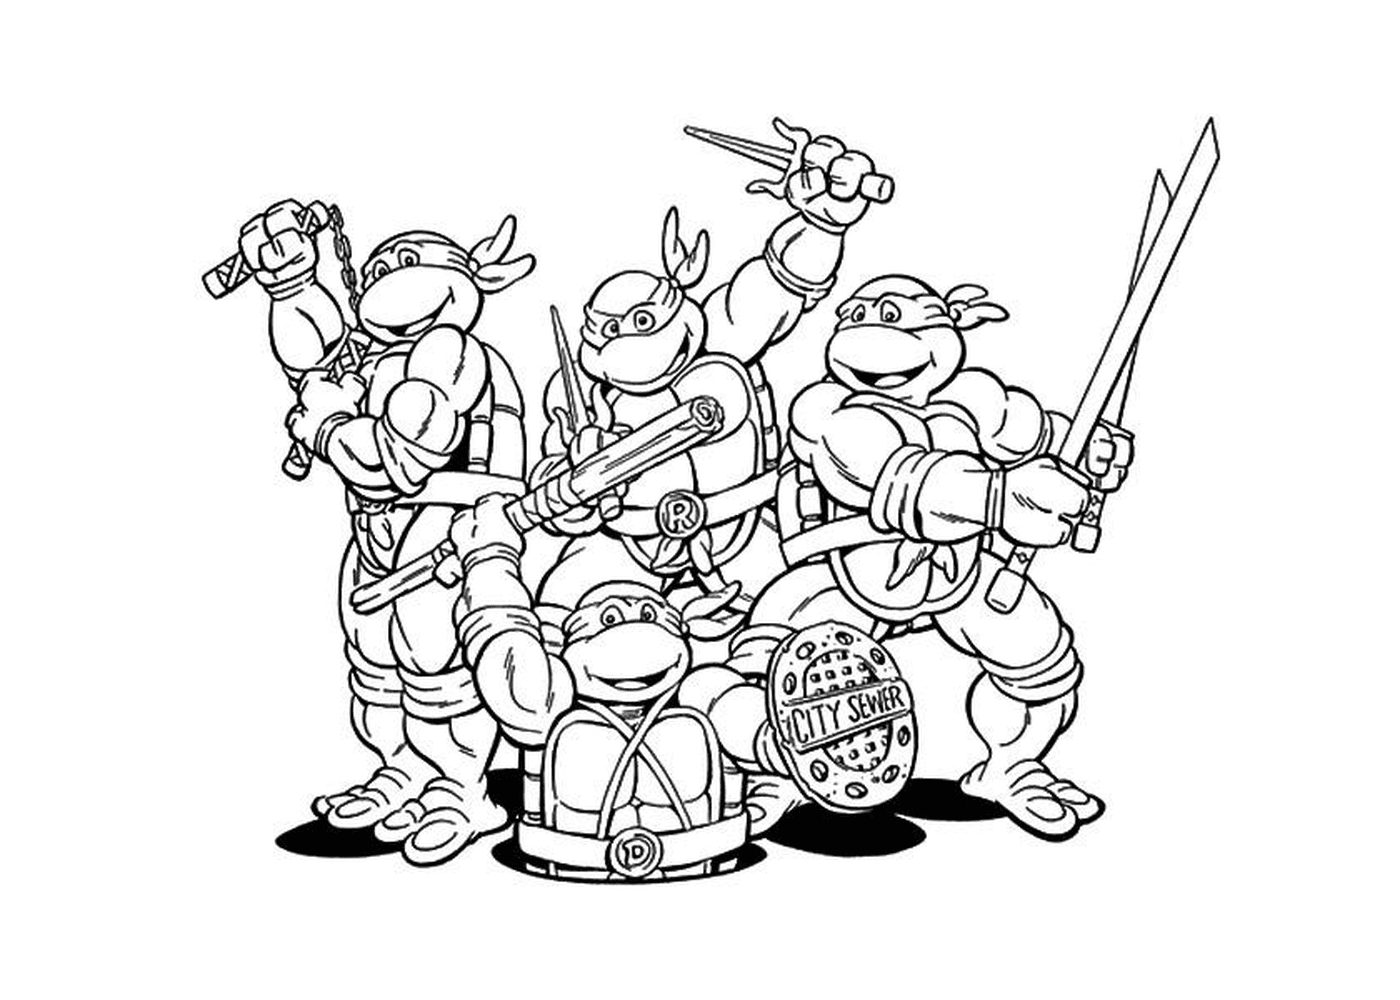  Gruppe von Ninja Schildkröten 